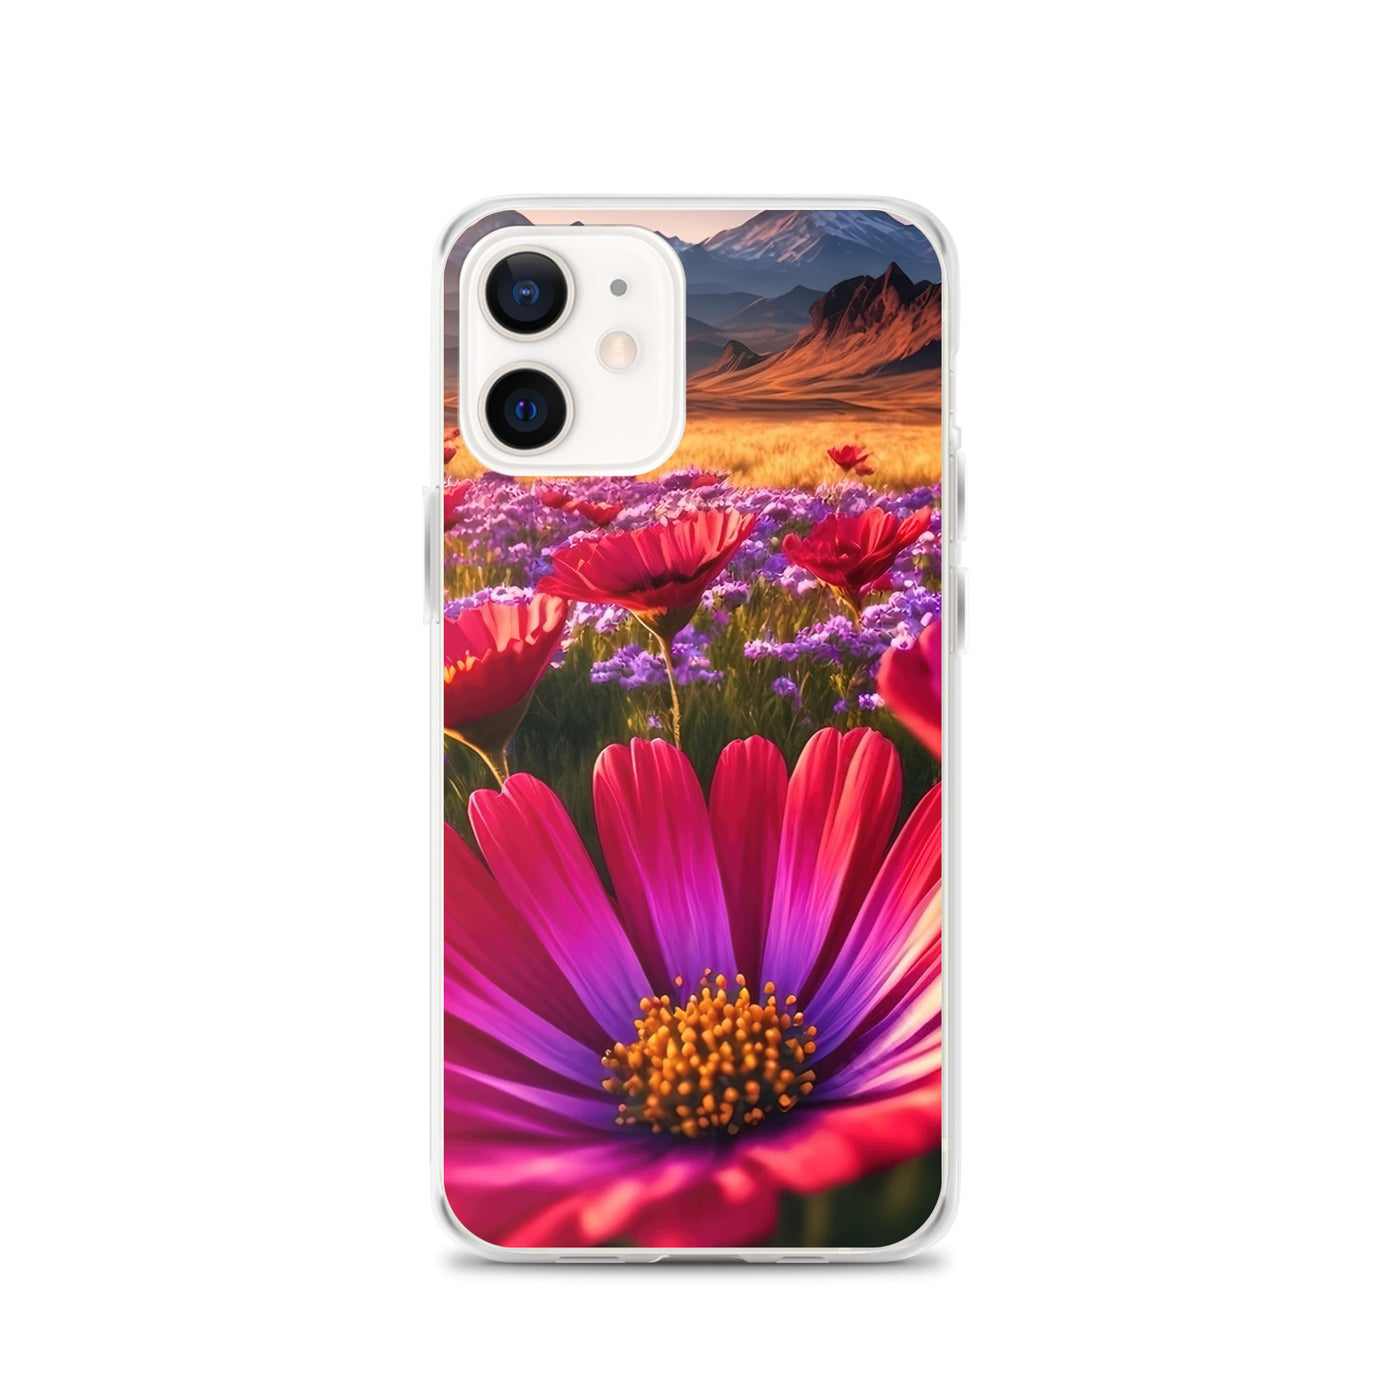 Wünderschöne Blumen und Berge im Hintergrund - iPhone Schutzhülle (durchsichtig) berge xxx iPhone 12